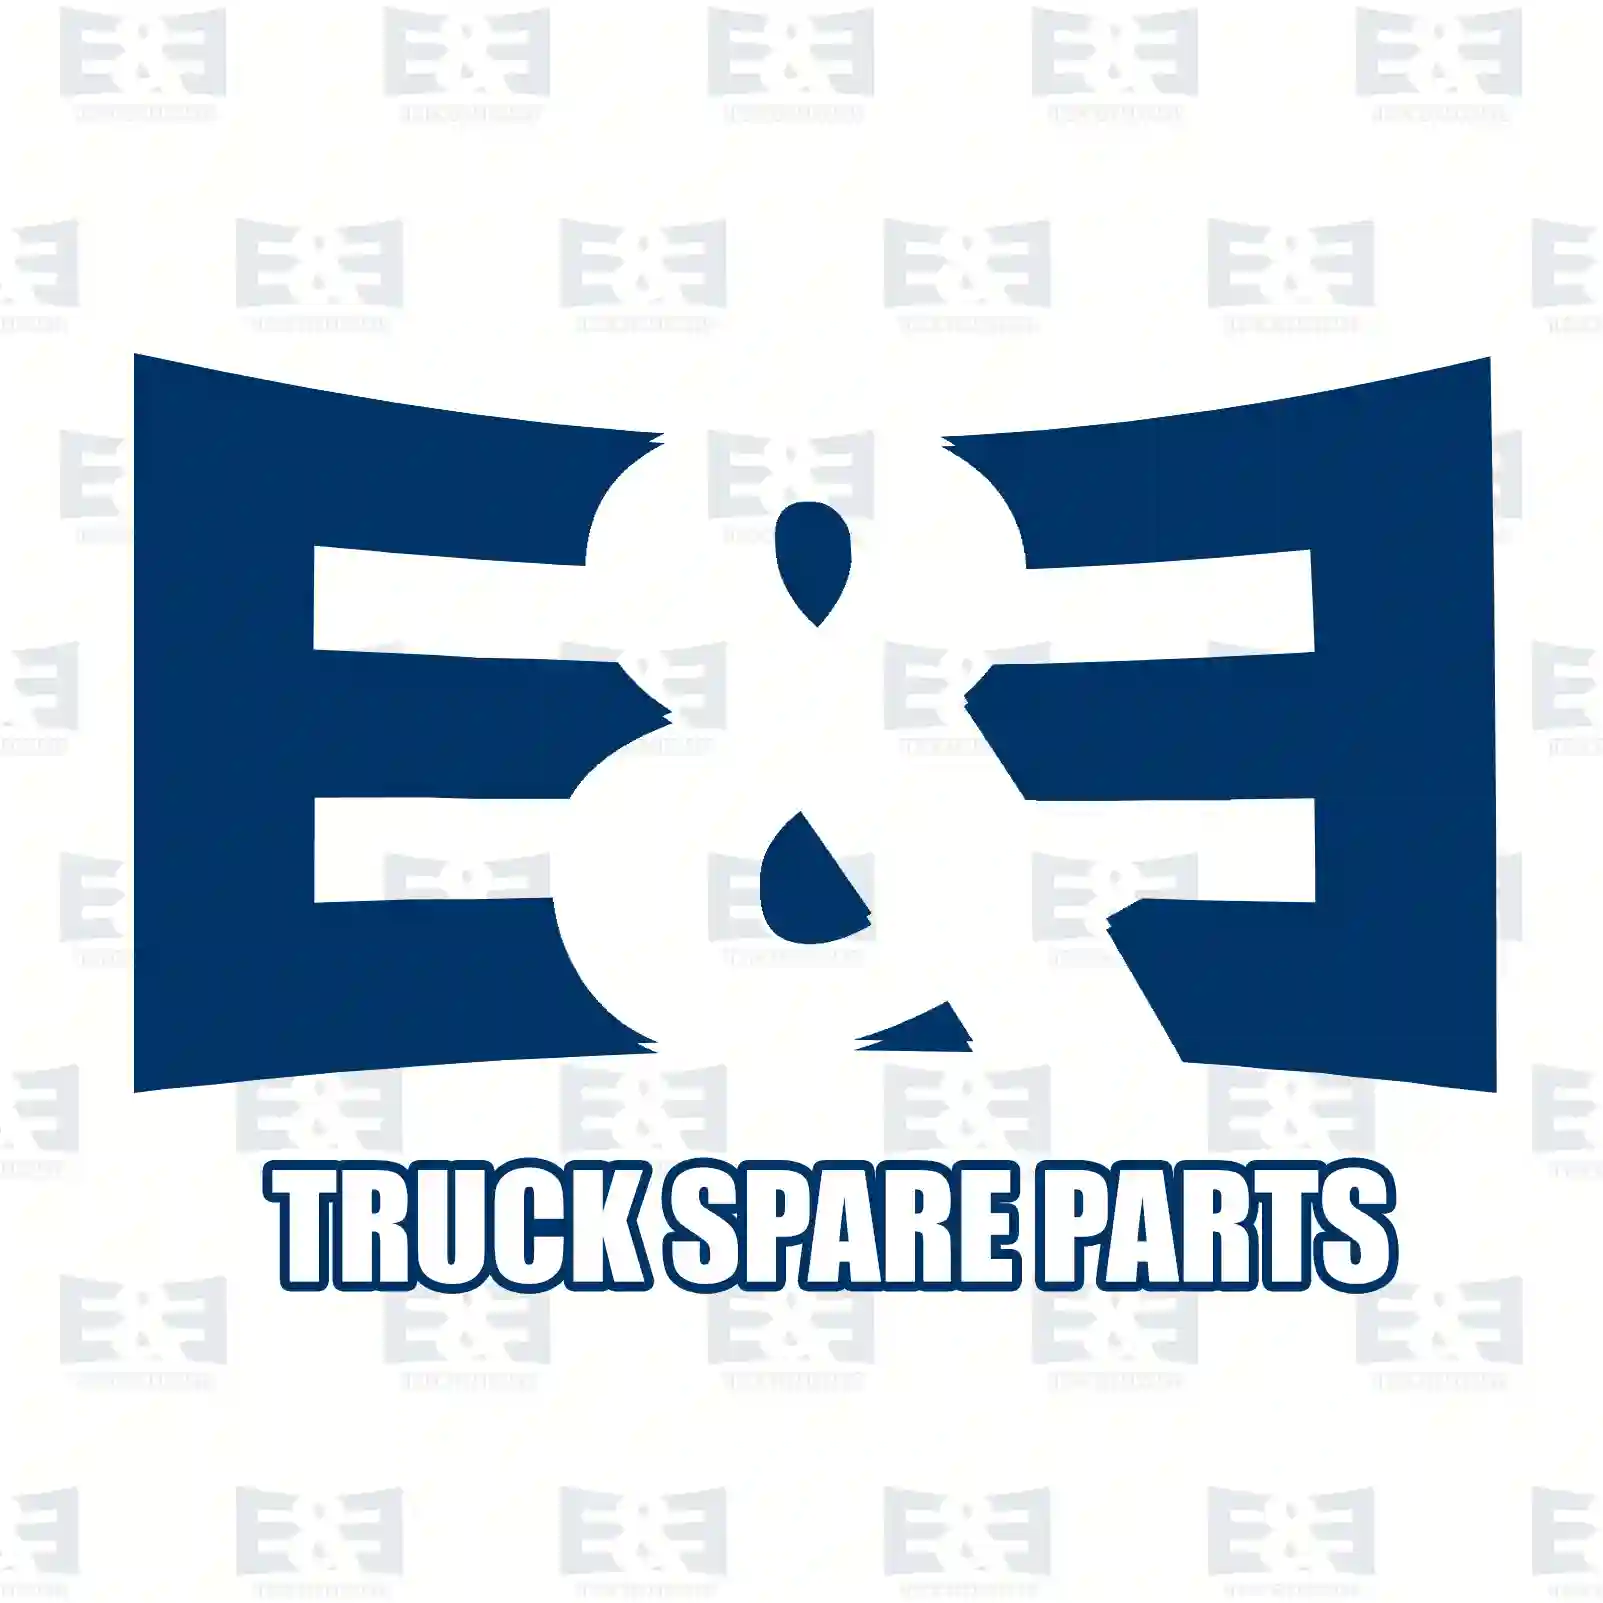 O-ring, 2E2286225, 51965010571, 2V5145117A ||  2E2286225 E&E Truck Spare Parts | Truck Spare Parts, Auotomotive Spare Parts O-ring, 2E2286225, 51965010571, 2V5145117A ||  2E2286225 E&E Truck Spare Parts | Truck Spare Parts, Auotomotive Spare Parts